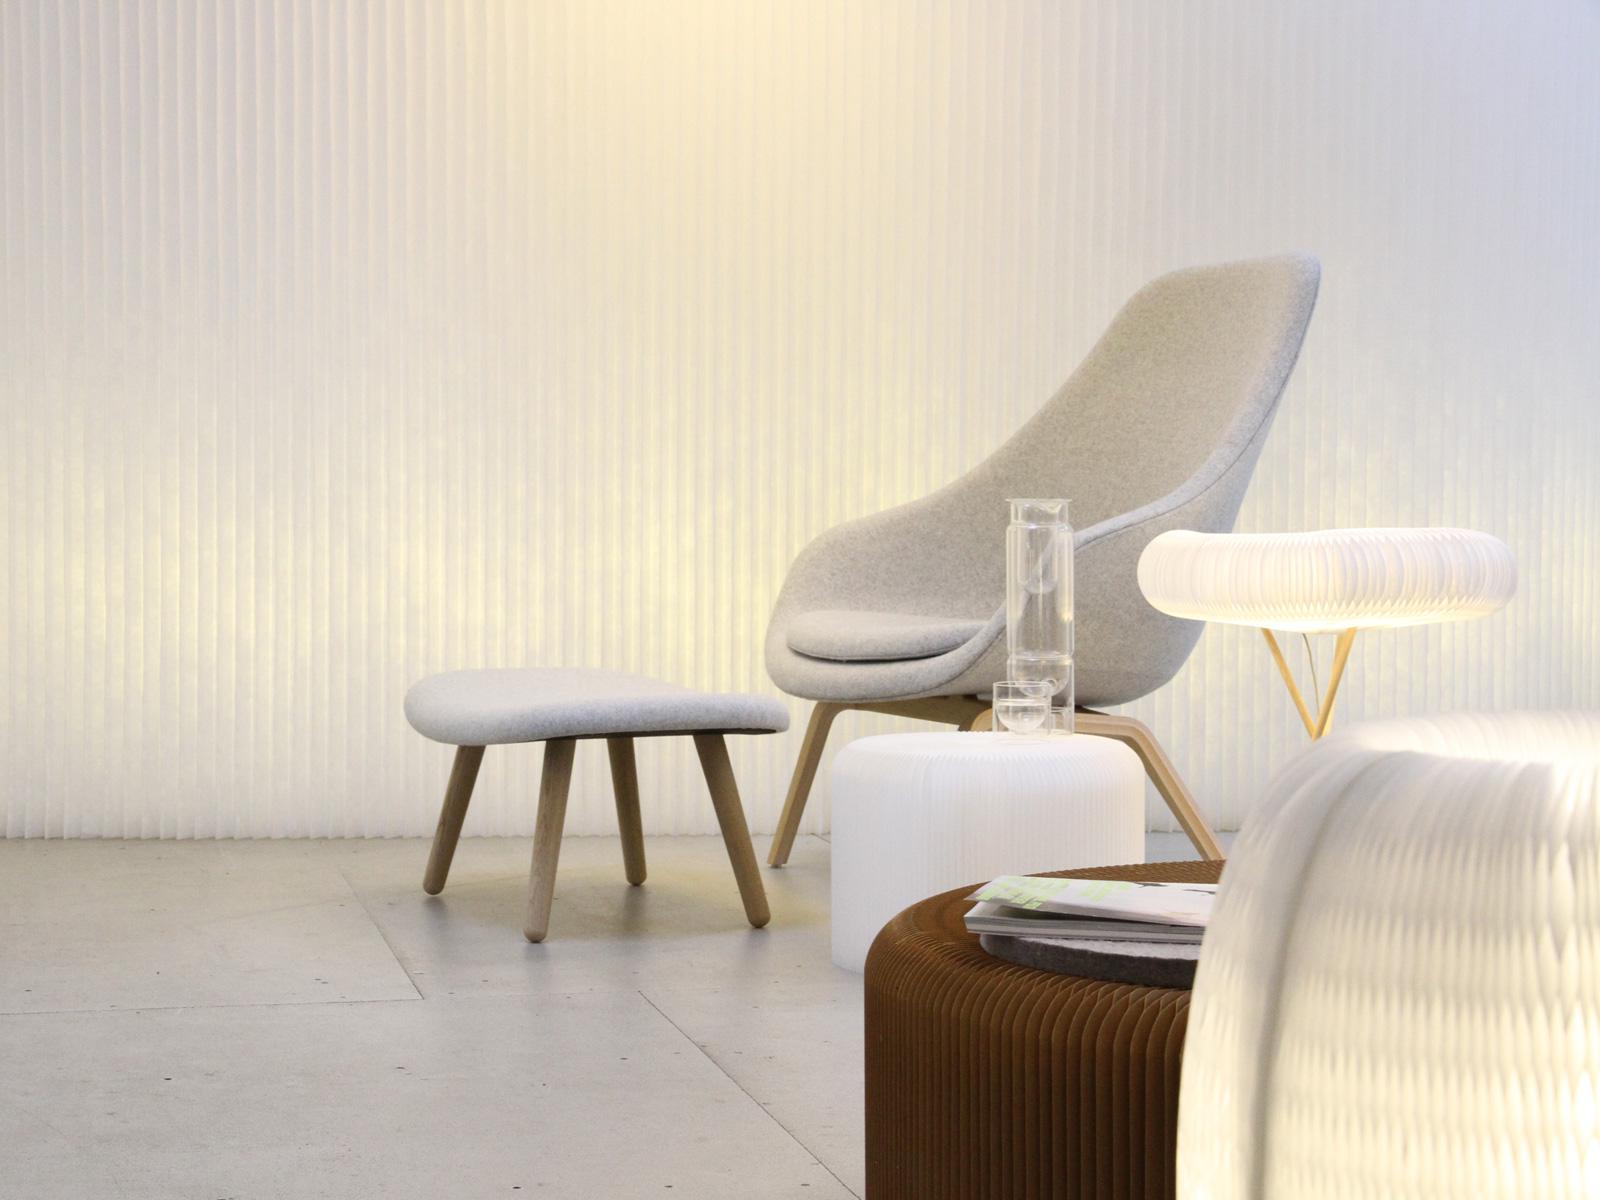 Lounge Chair mit Beistelltisch, Leuchte und Raumteiler #raumteiler ©Foto: Silke Heinze